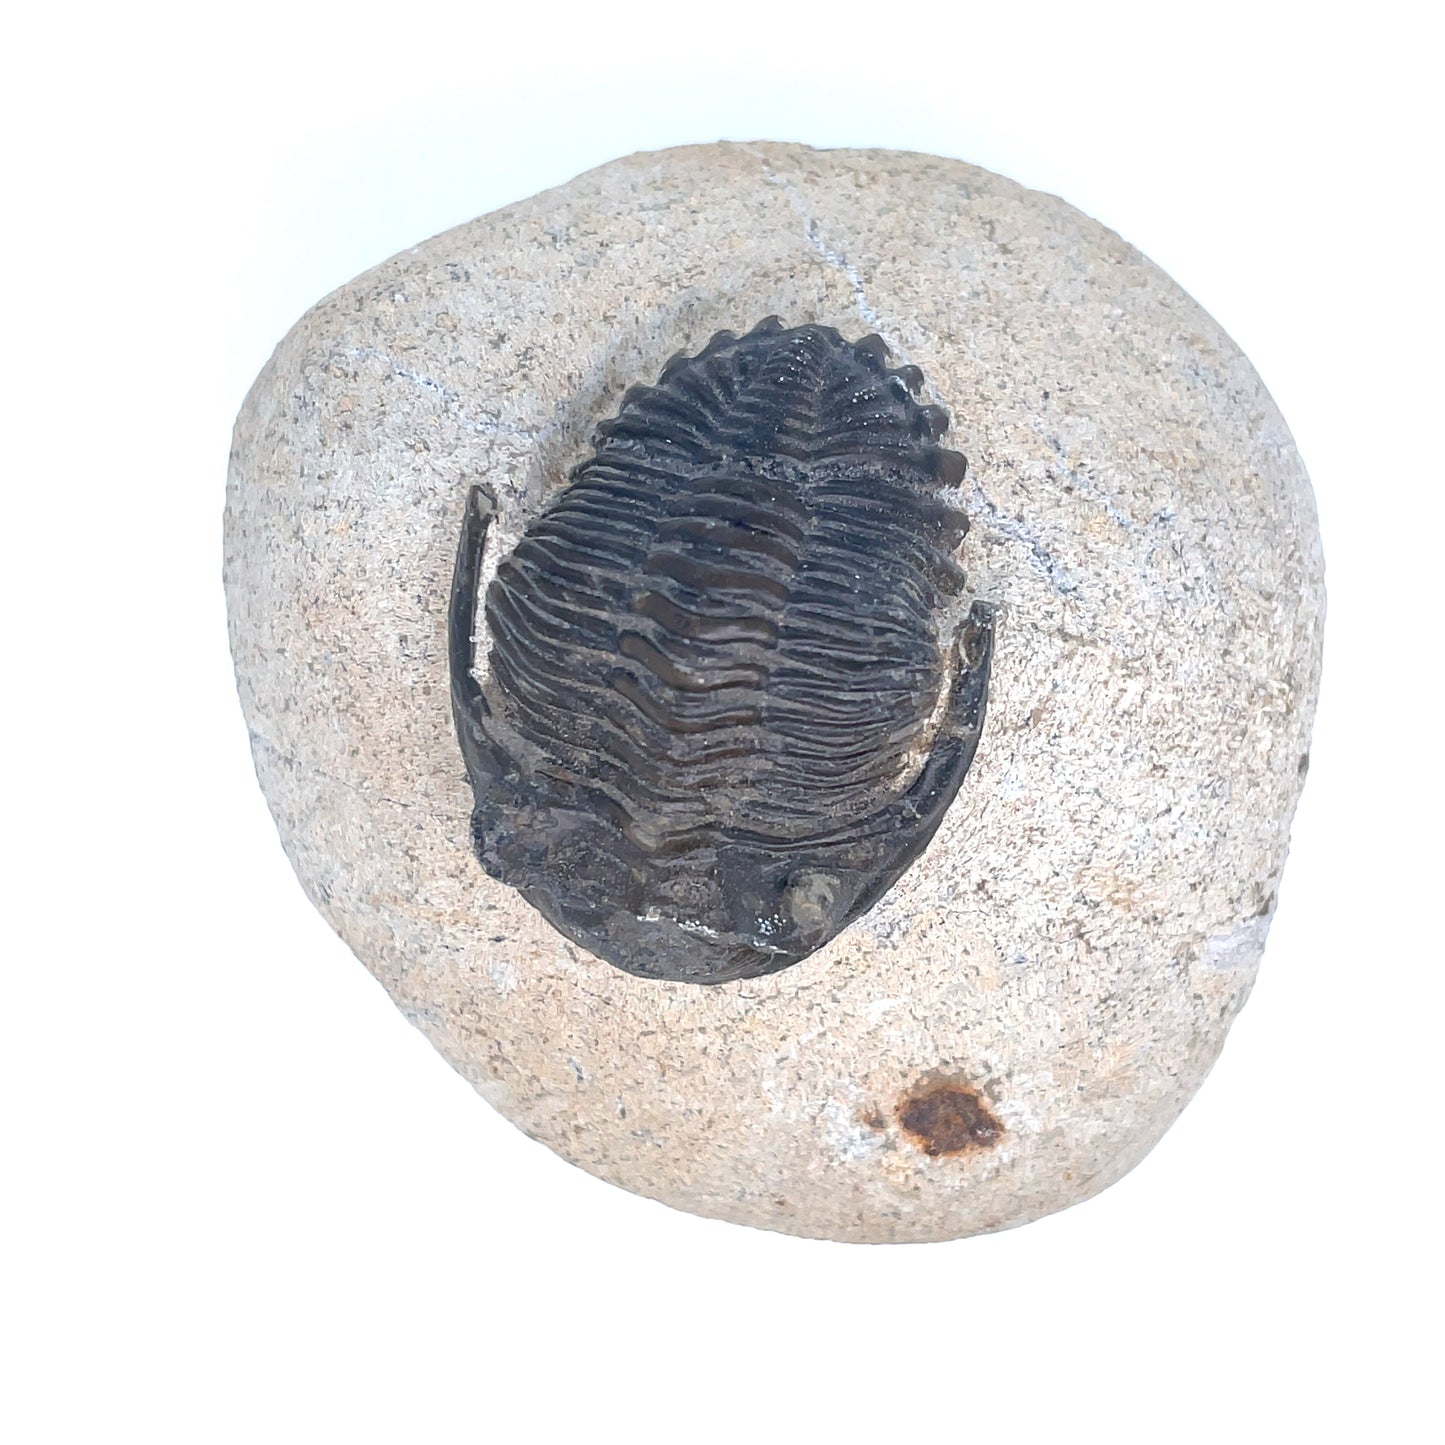 Fossilized Trilobite